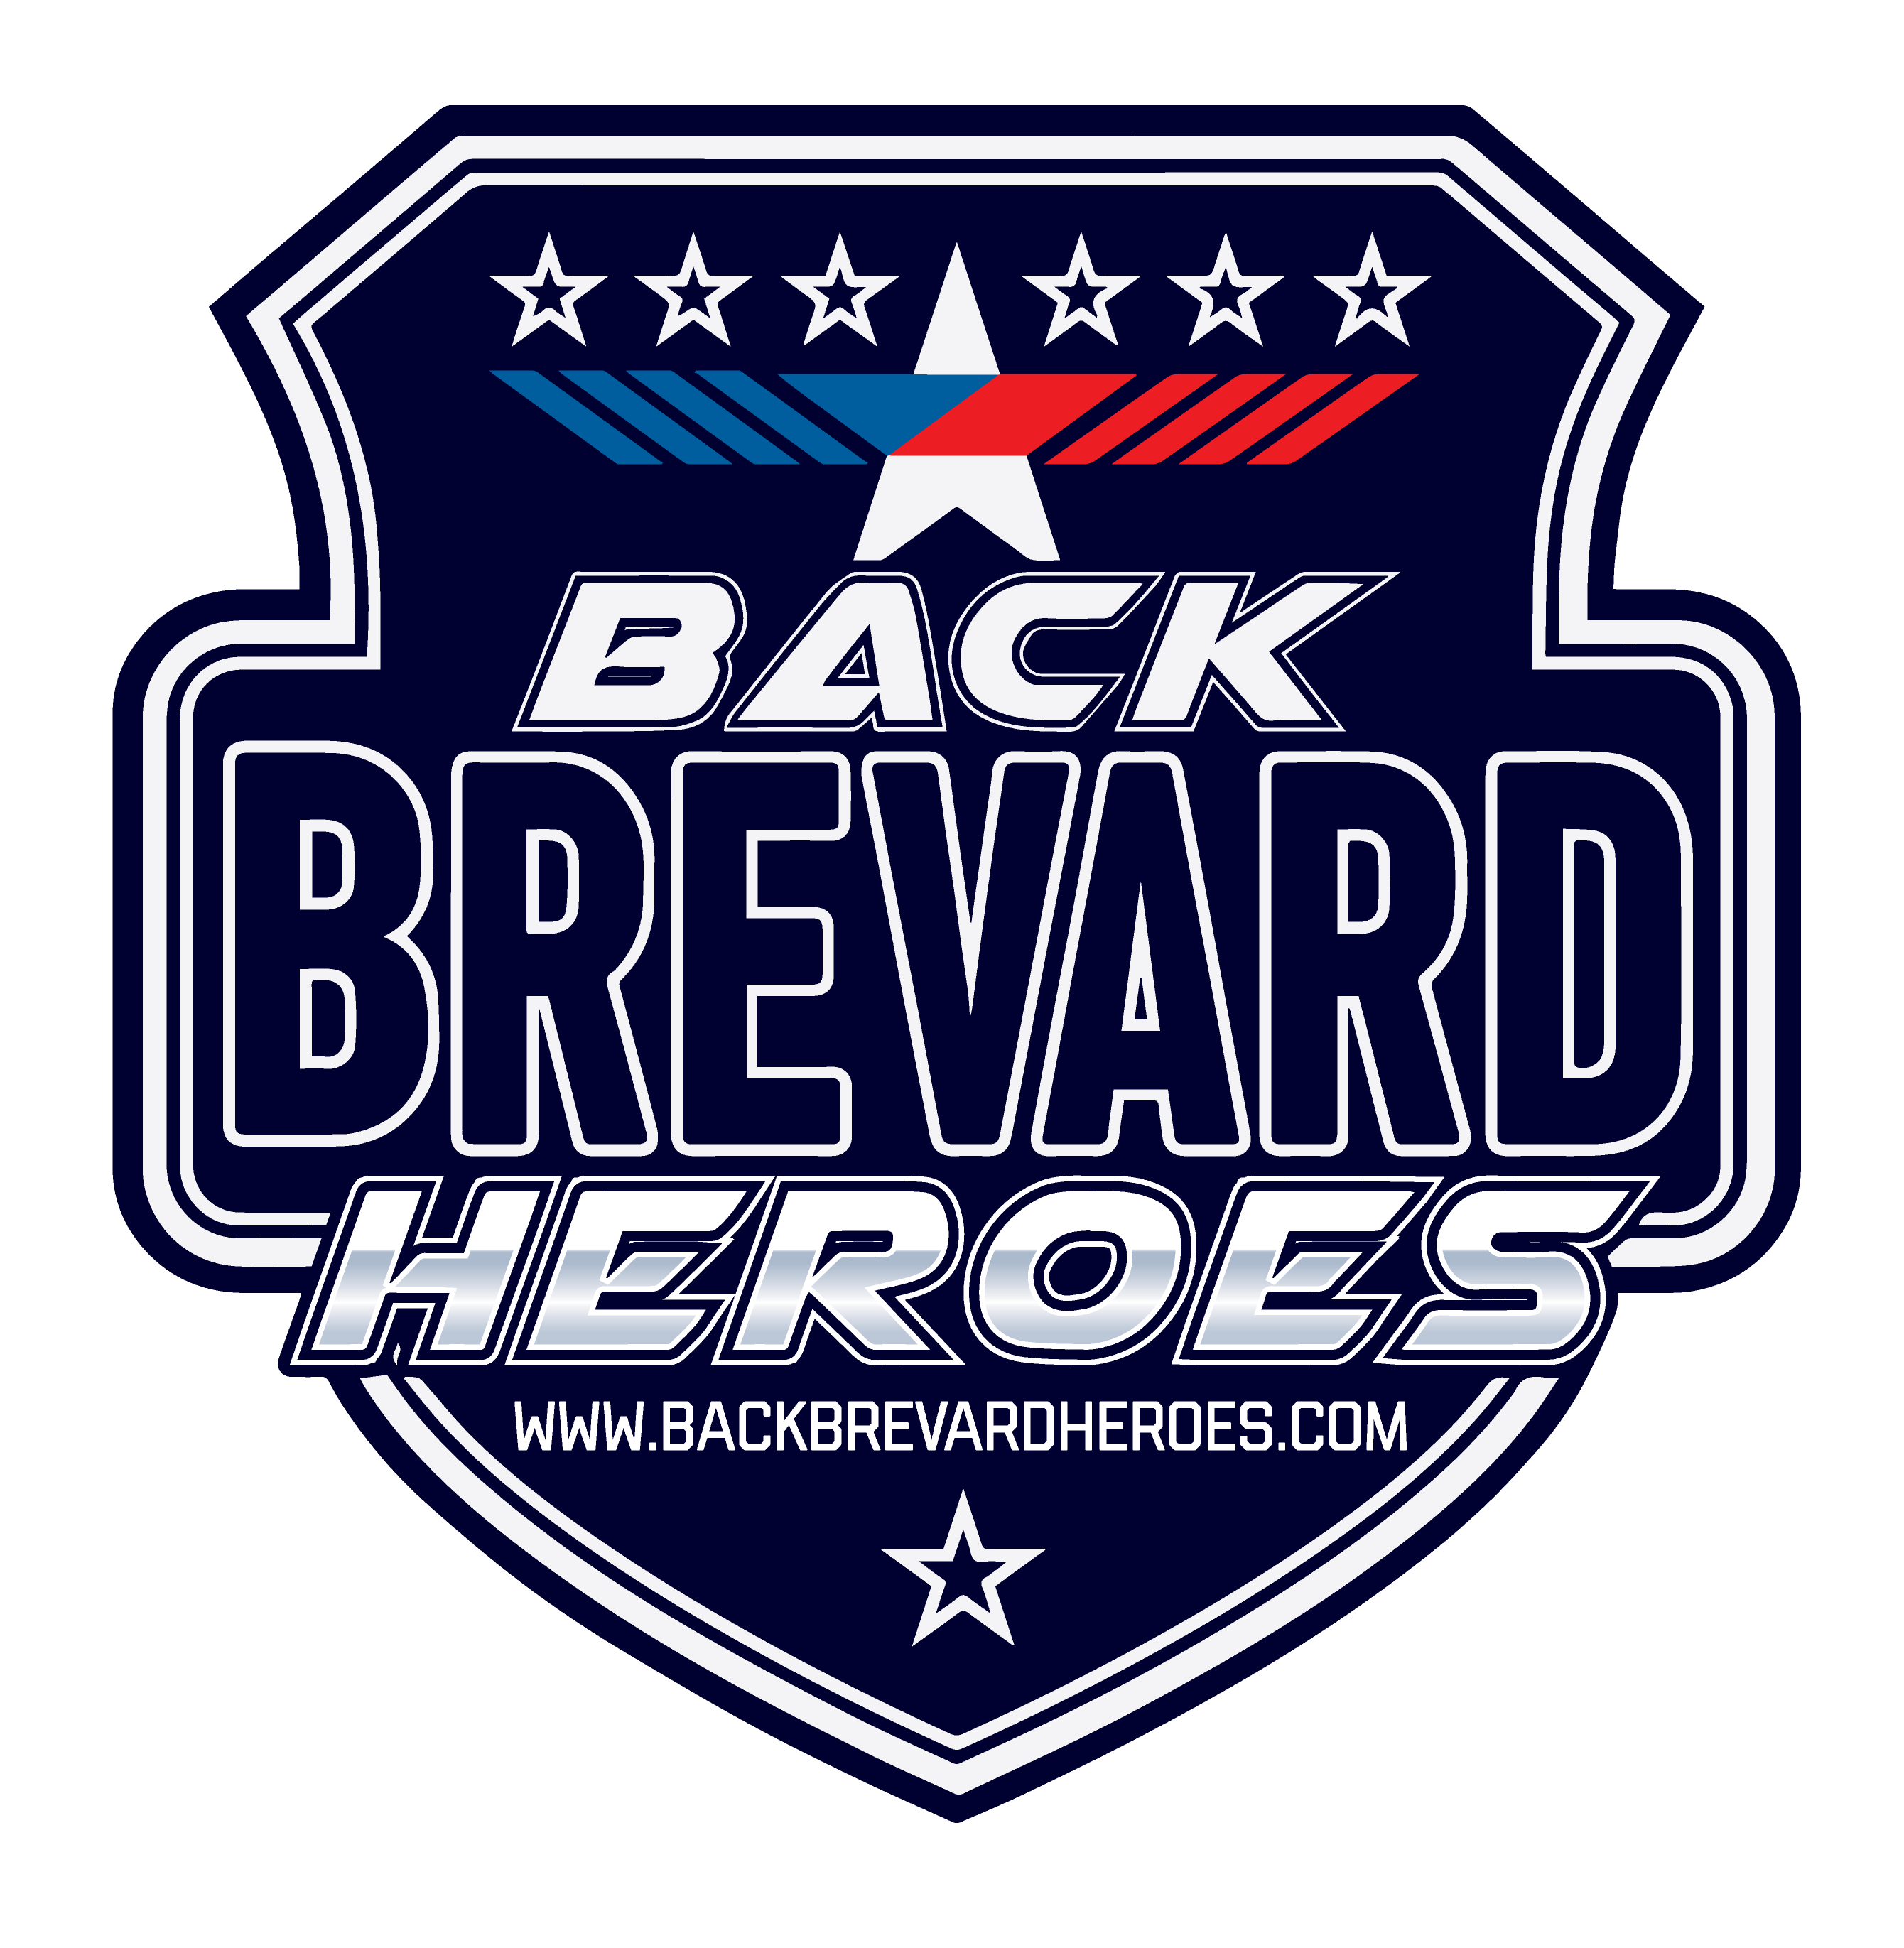 Back Brevard Heroes